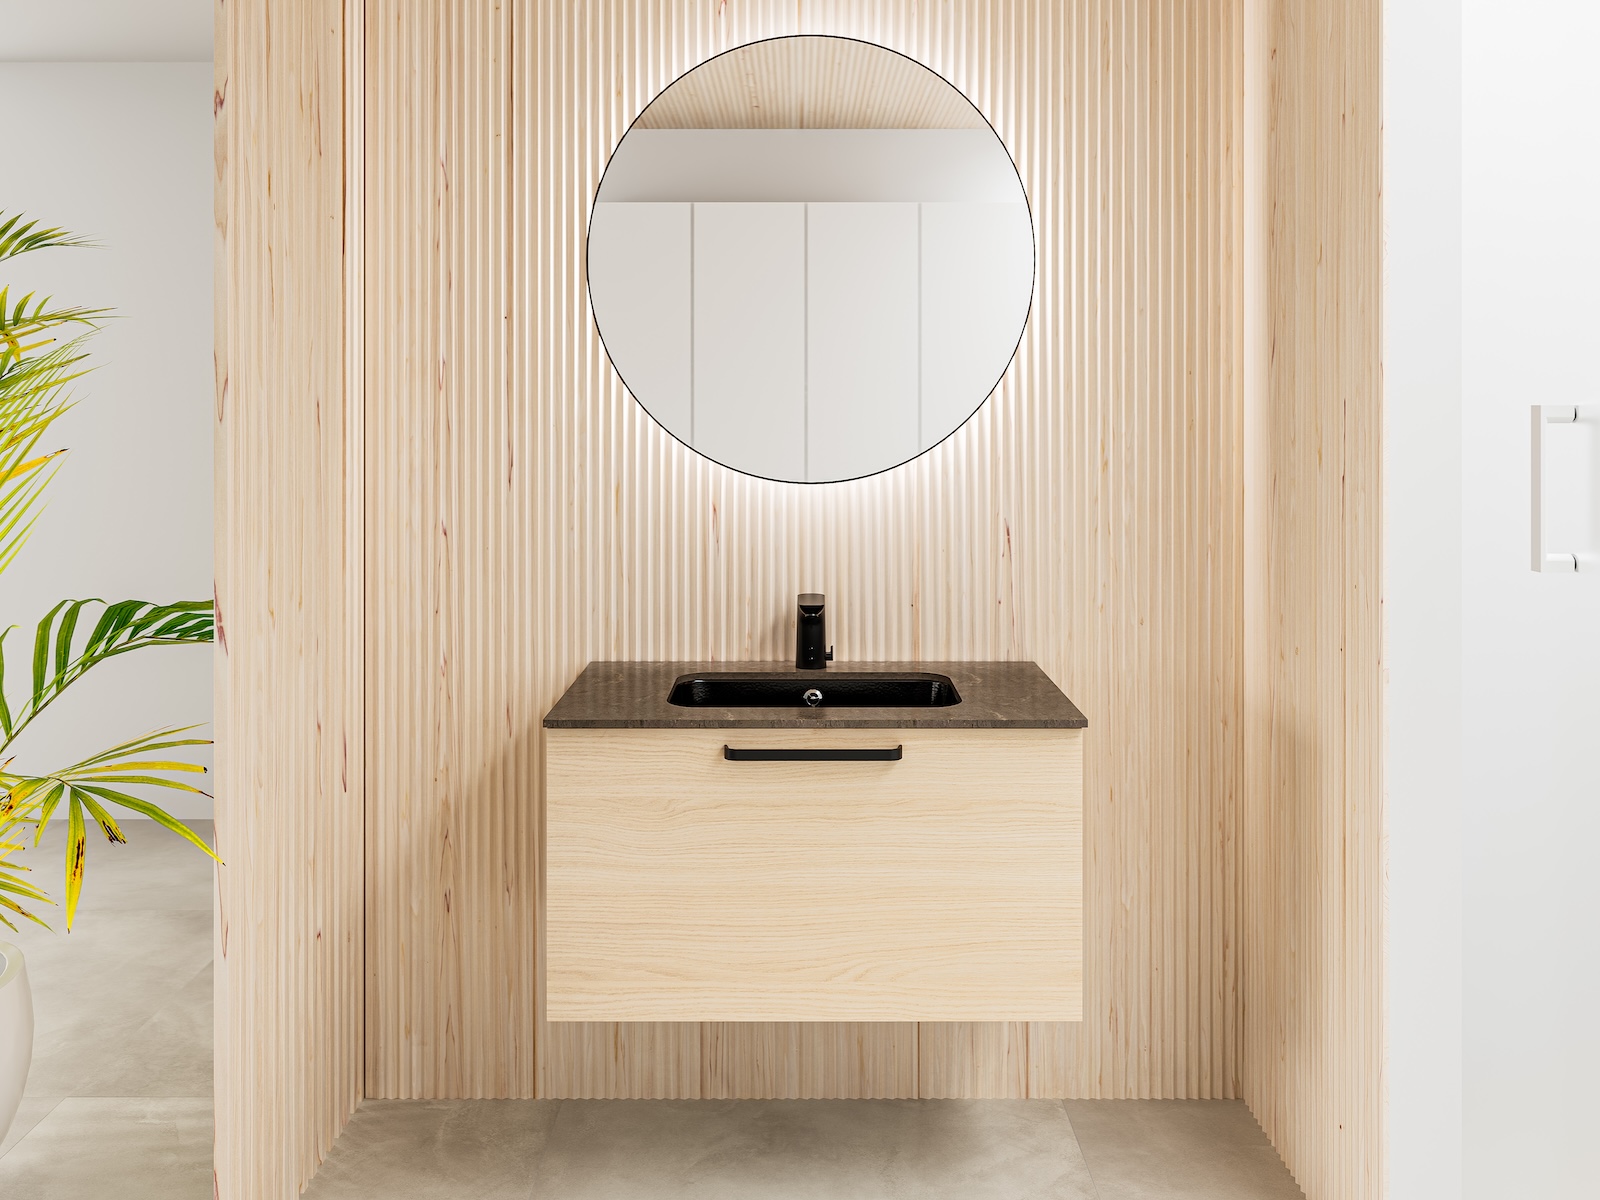 Temal kylpyhuone, Design, pyöreä peili, tamminen allaskaappi, skandinaavinen kylpyhuone, musta allas